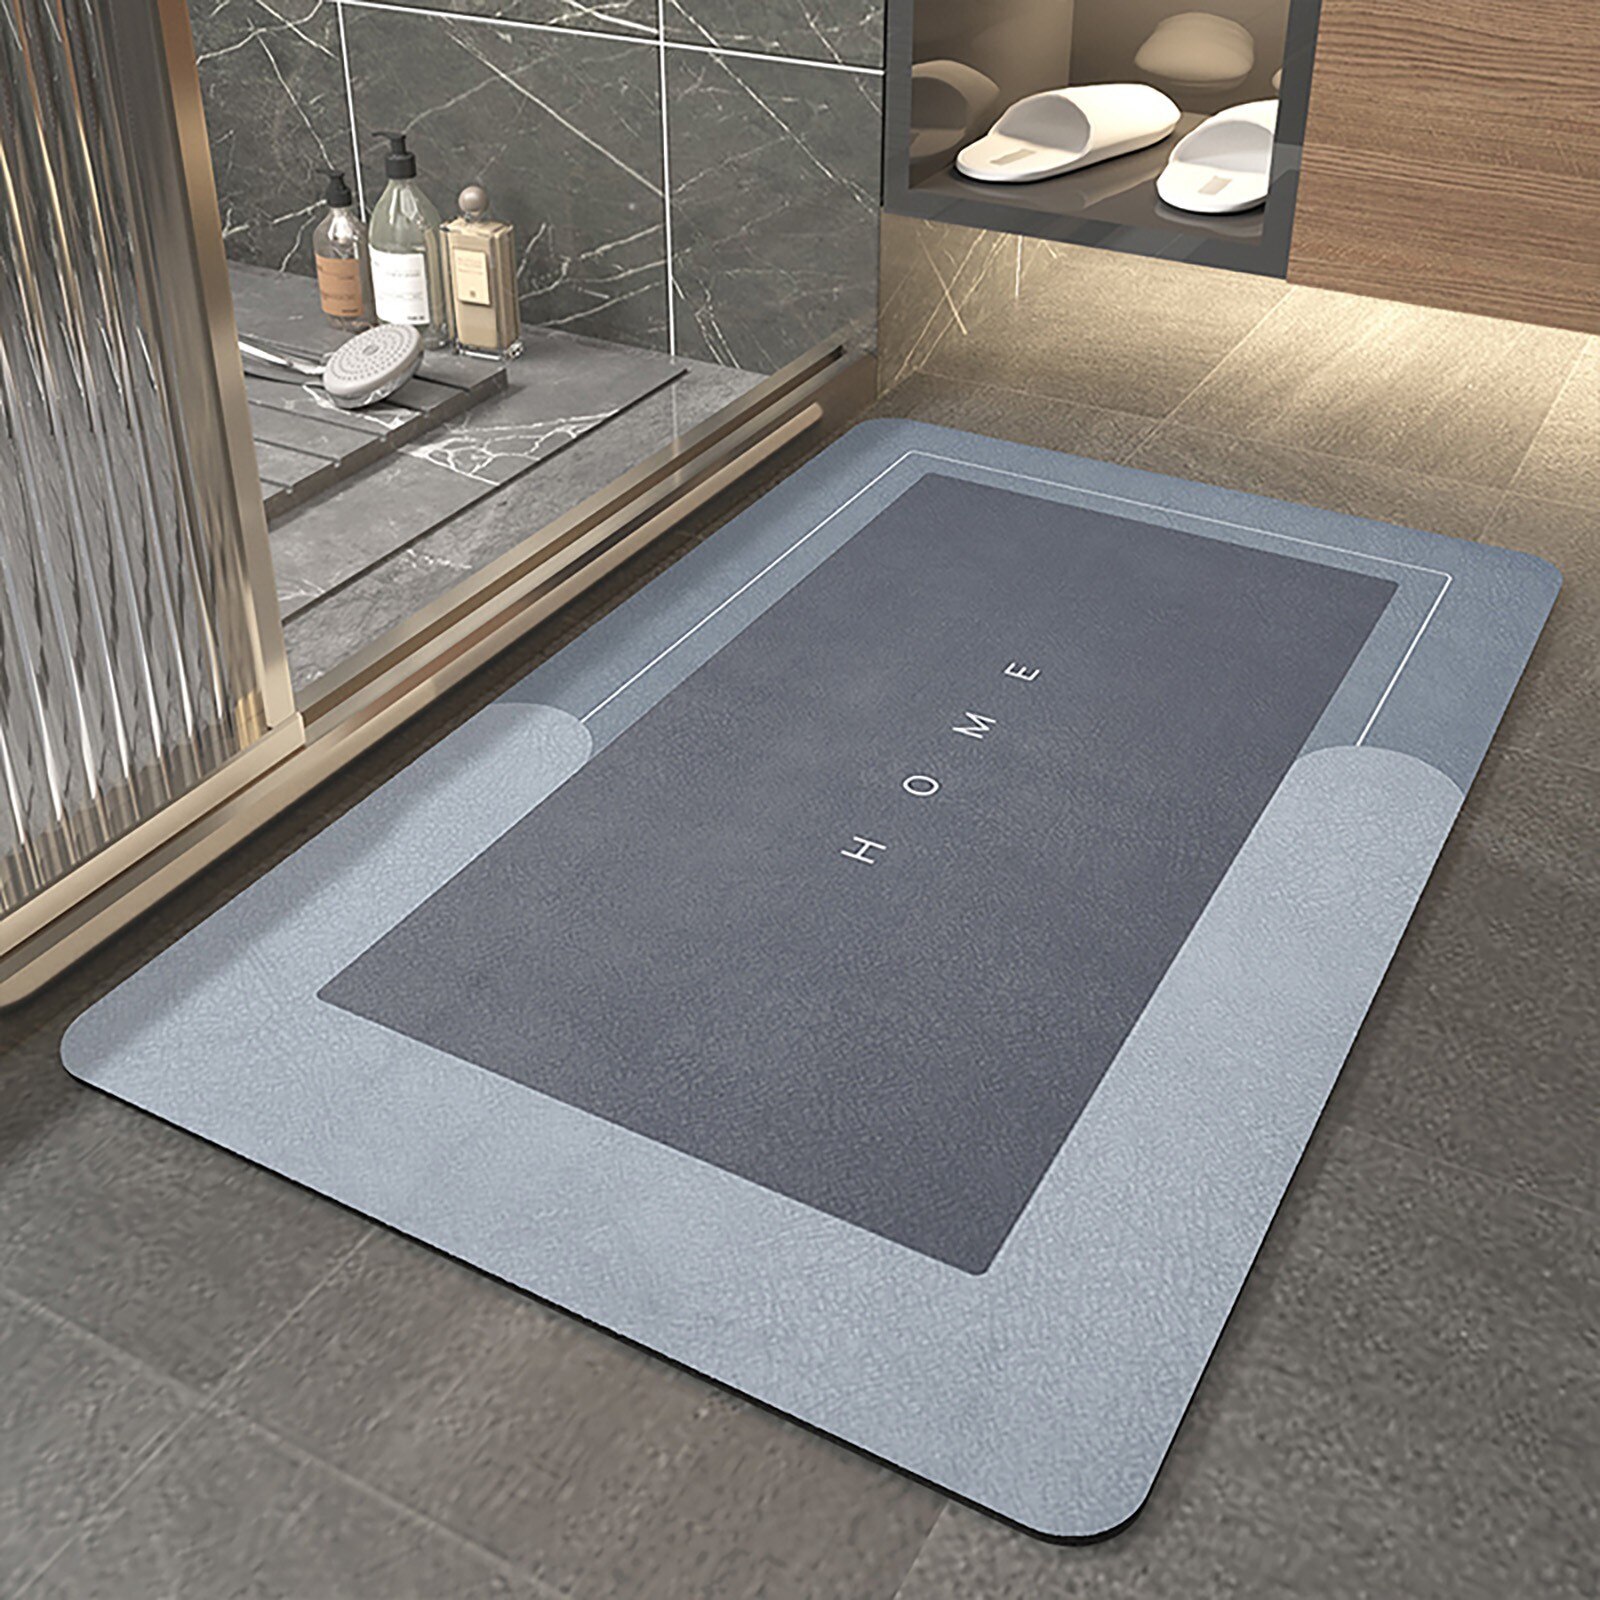 Super Absorbent Floor Bath Door Mat Non-Slip Rug Doormat (Blue Grey, 50 x 80)